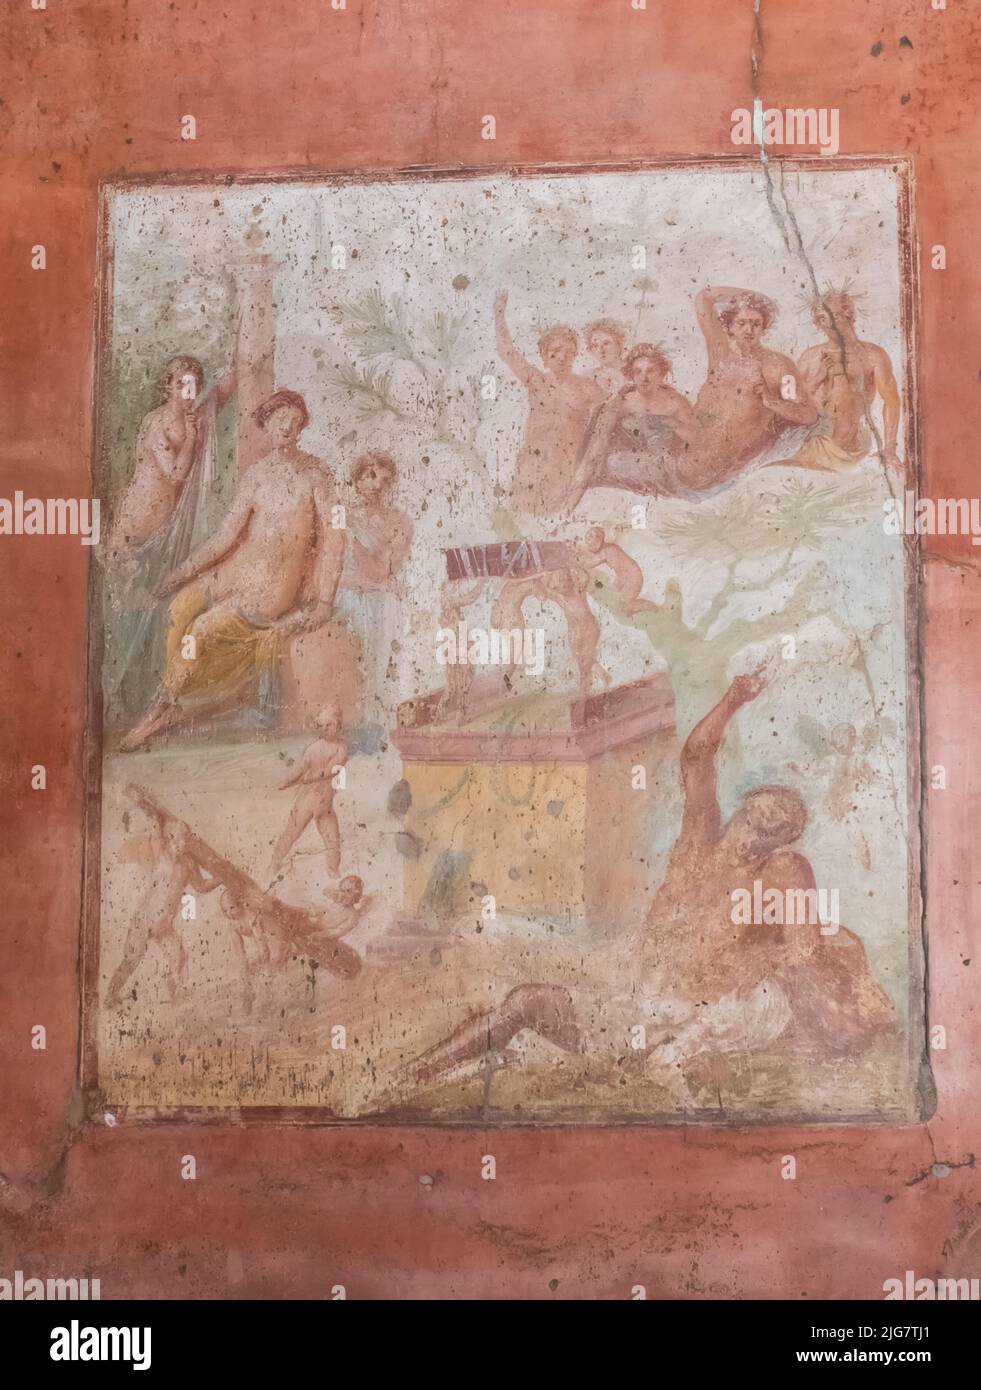 Vieilles fresques de Pompéi, l'ancienne ville romaine détruite en 79 par l'éruption du Vésuve. Patrimoine mondial de l'UNESCO. Naples, Italie Banque D'Images